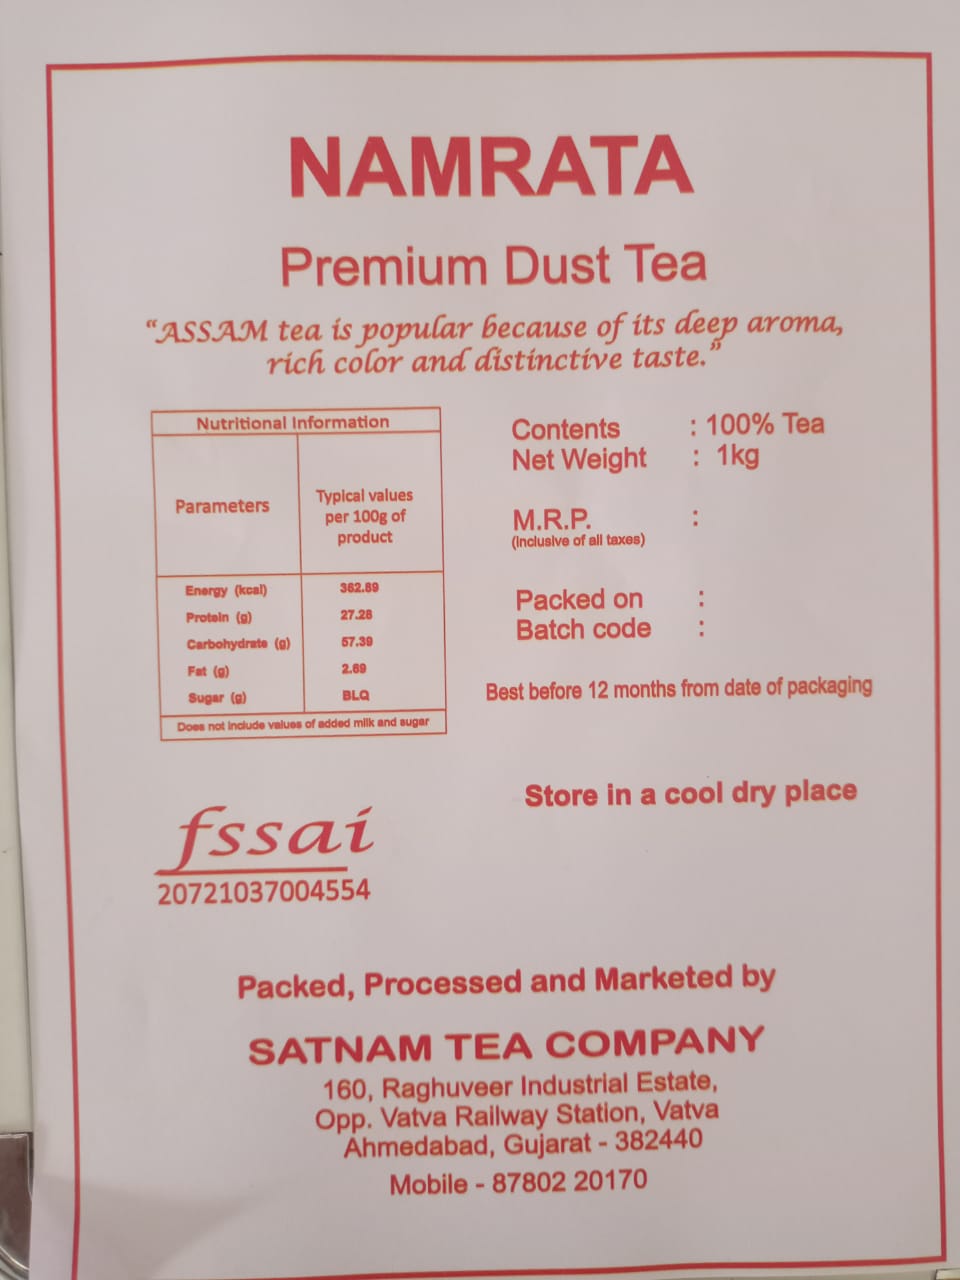 Namrata Premium Dust Tea